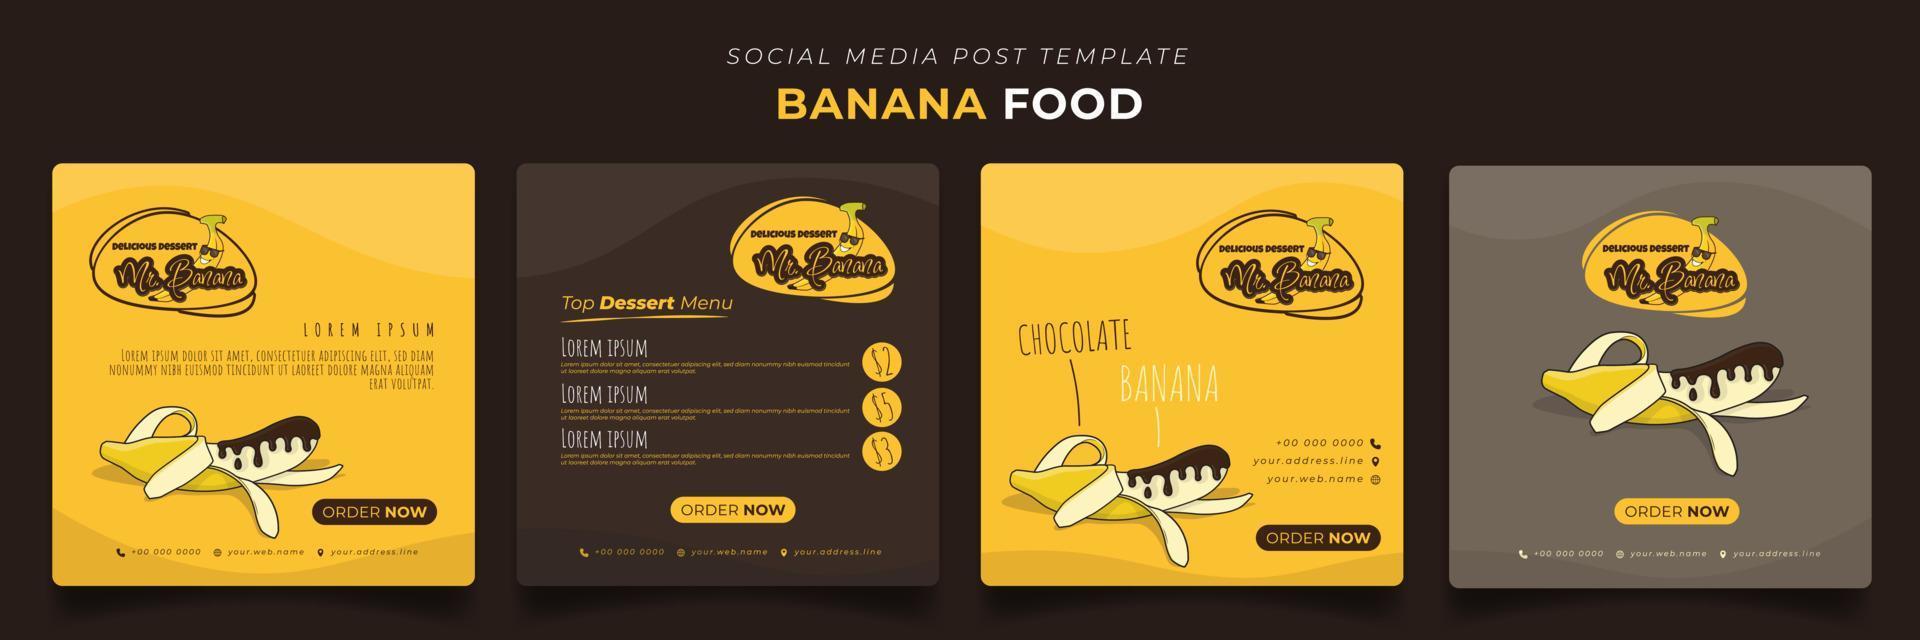 social-media-beitragsvorlage mit geschmolzener schokolade auf banane für bananenwerbedesign vektor